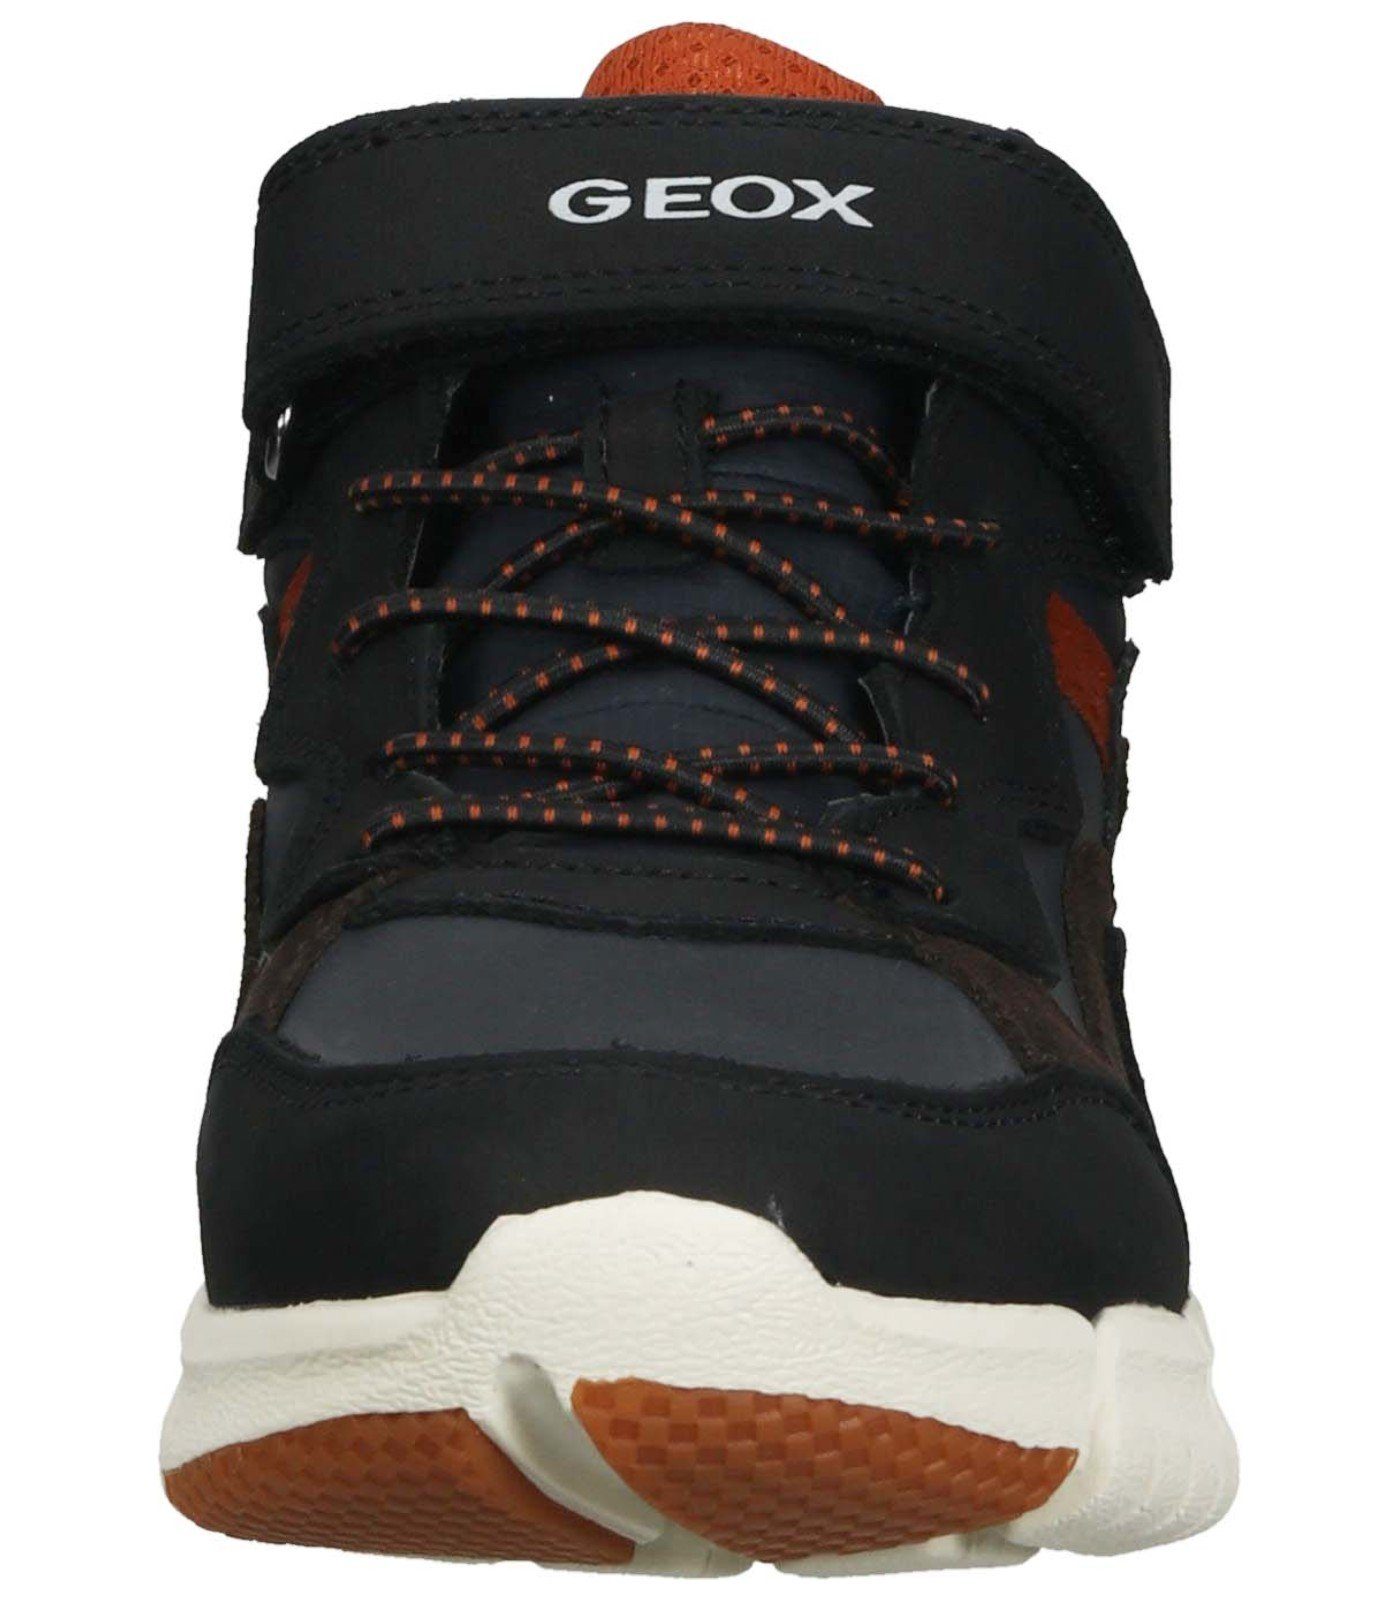 Geox Stiefelette Leder/Textil Schnürstiefelette Braun Orange